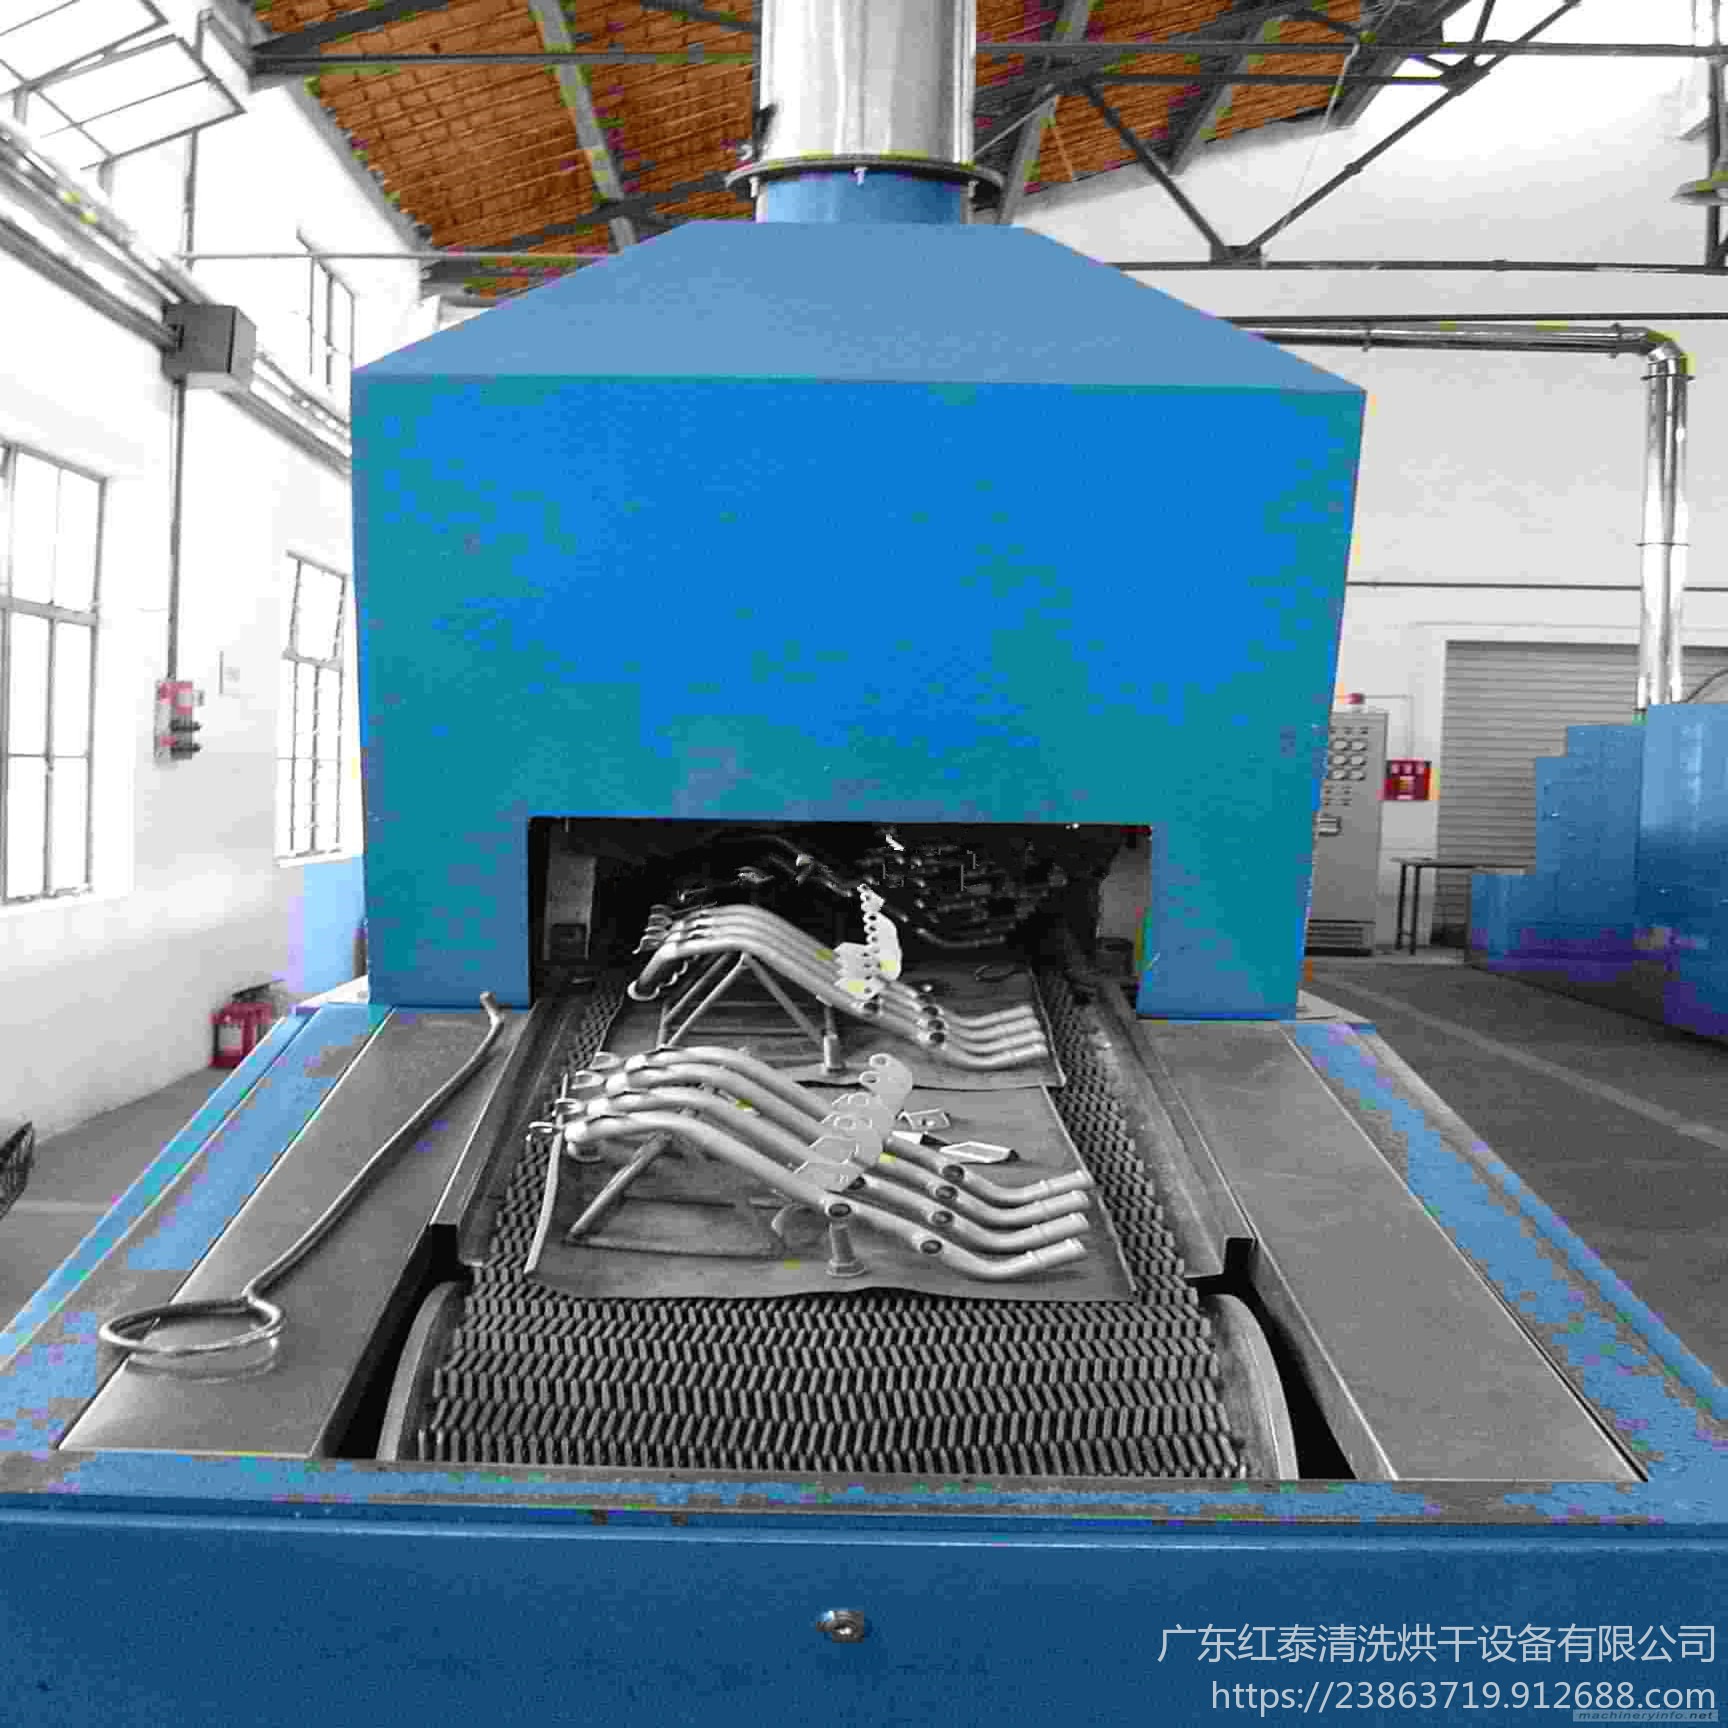 连续式钎焊炉 焊接设备钎焊加工 钎焊炉加工 深圳热处理炉红泰20191127图片